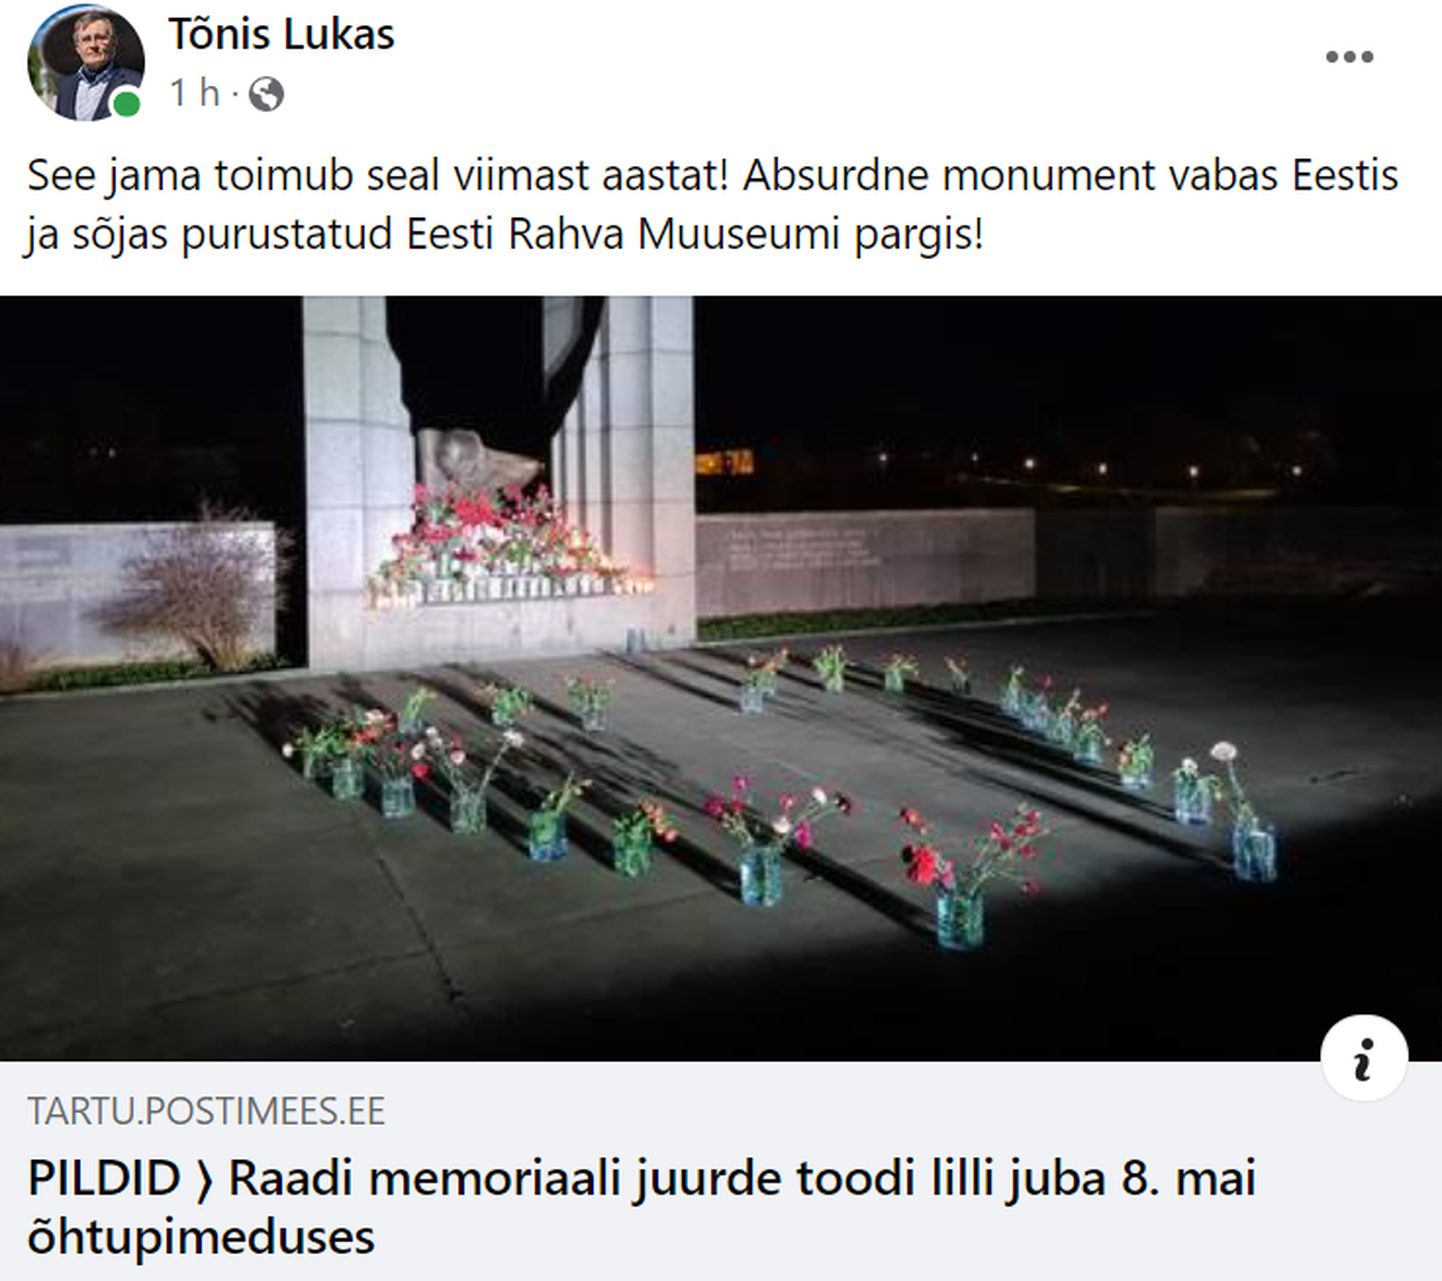 Сегодняшняя публикация председателя Тартуского городского собрания Тыниса Лукаса в социальной сети.